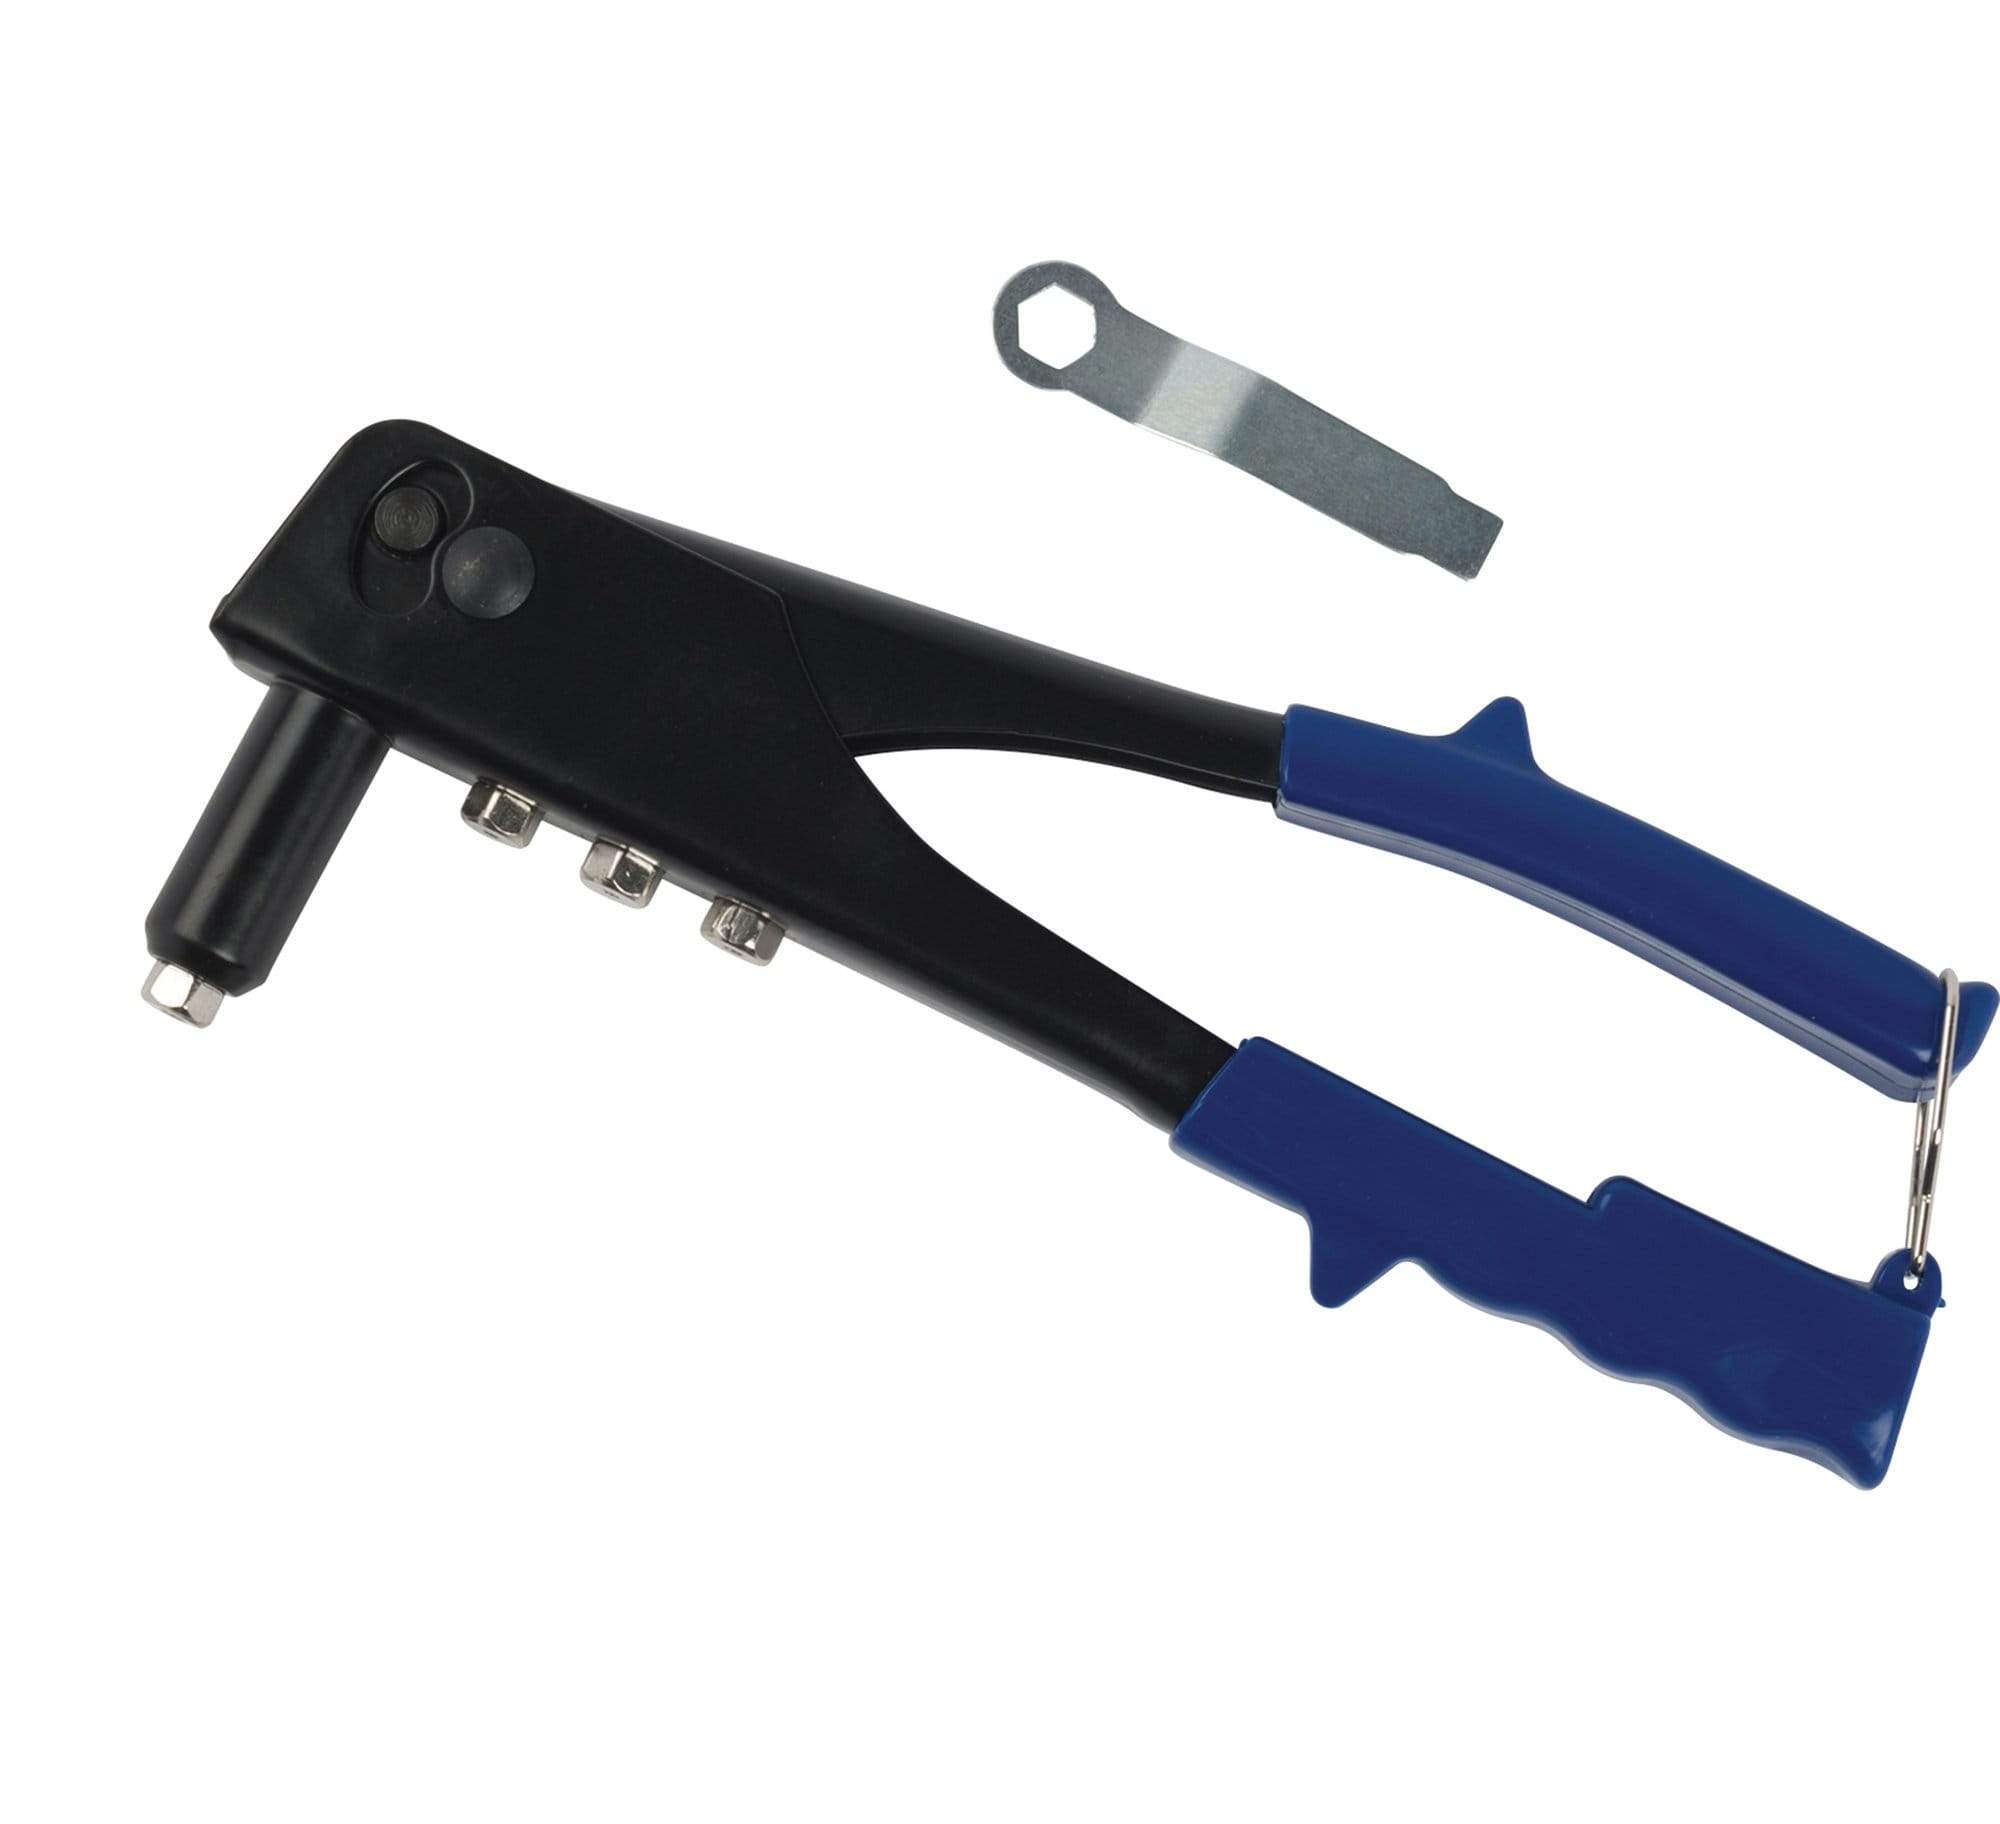 Industrial Hand Rivet Tool Kit (Blue-Point®), HR-26PKC